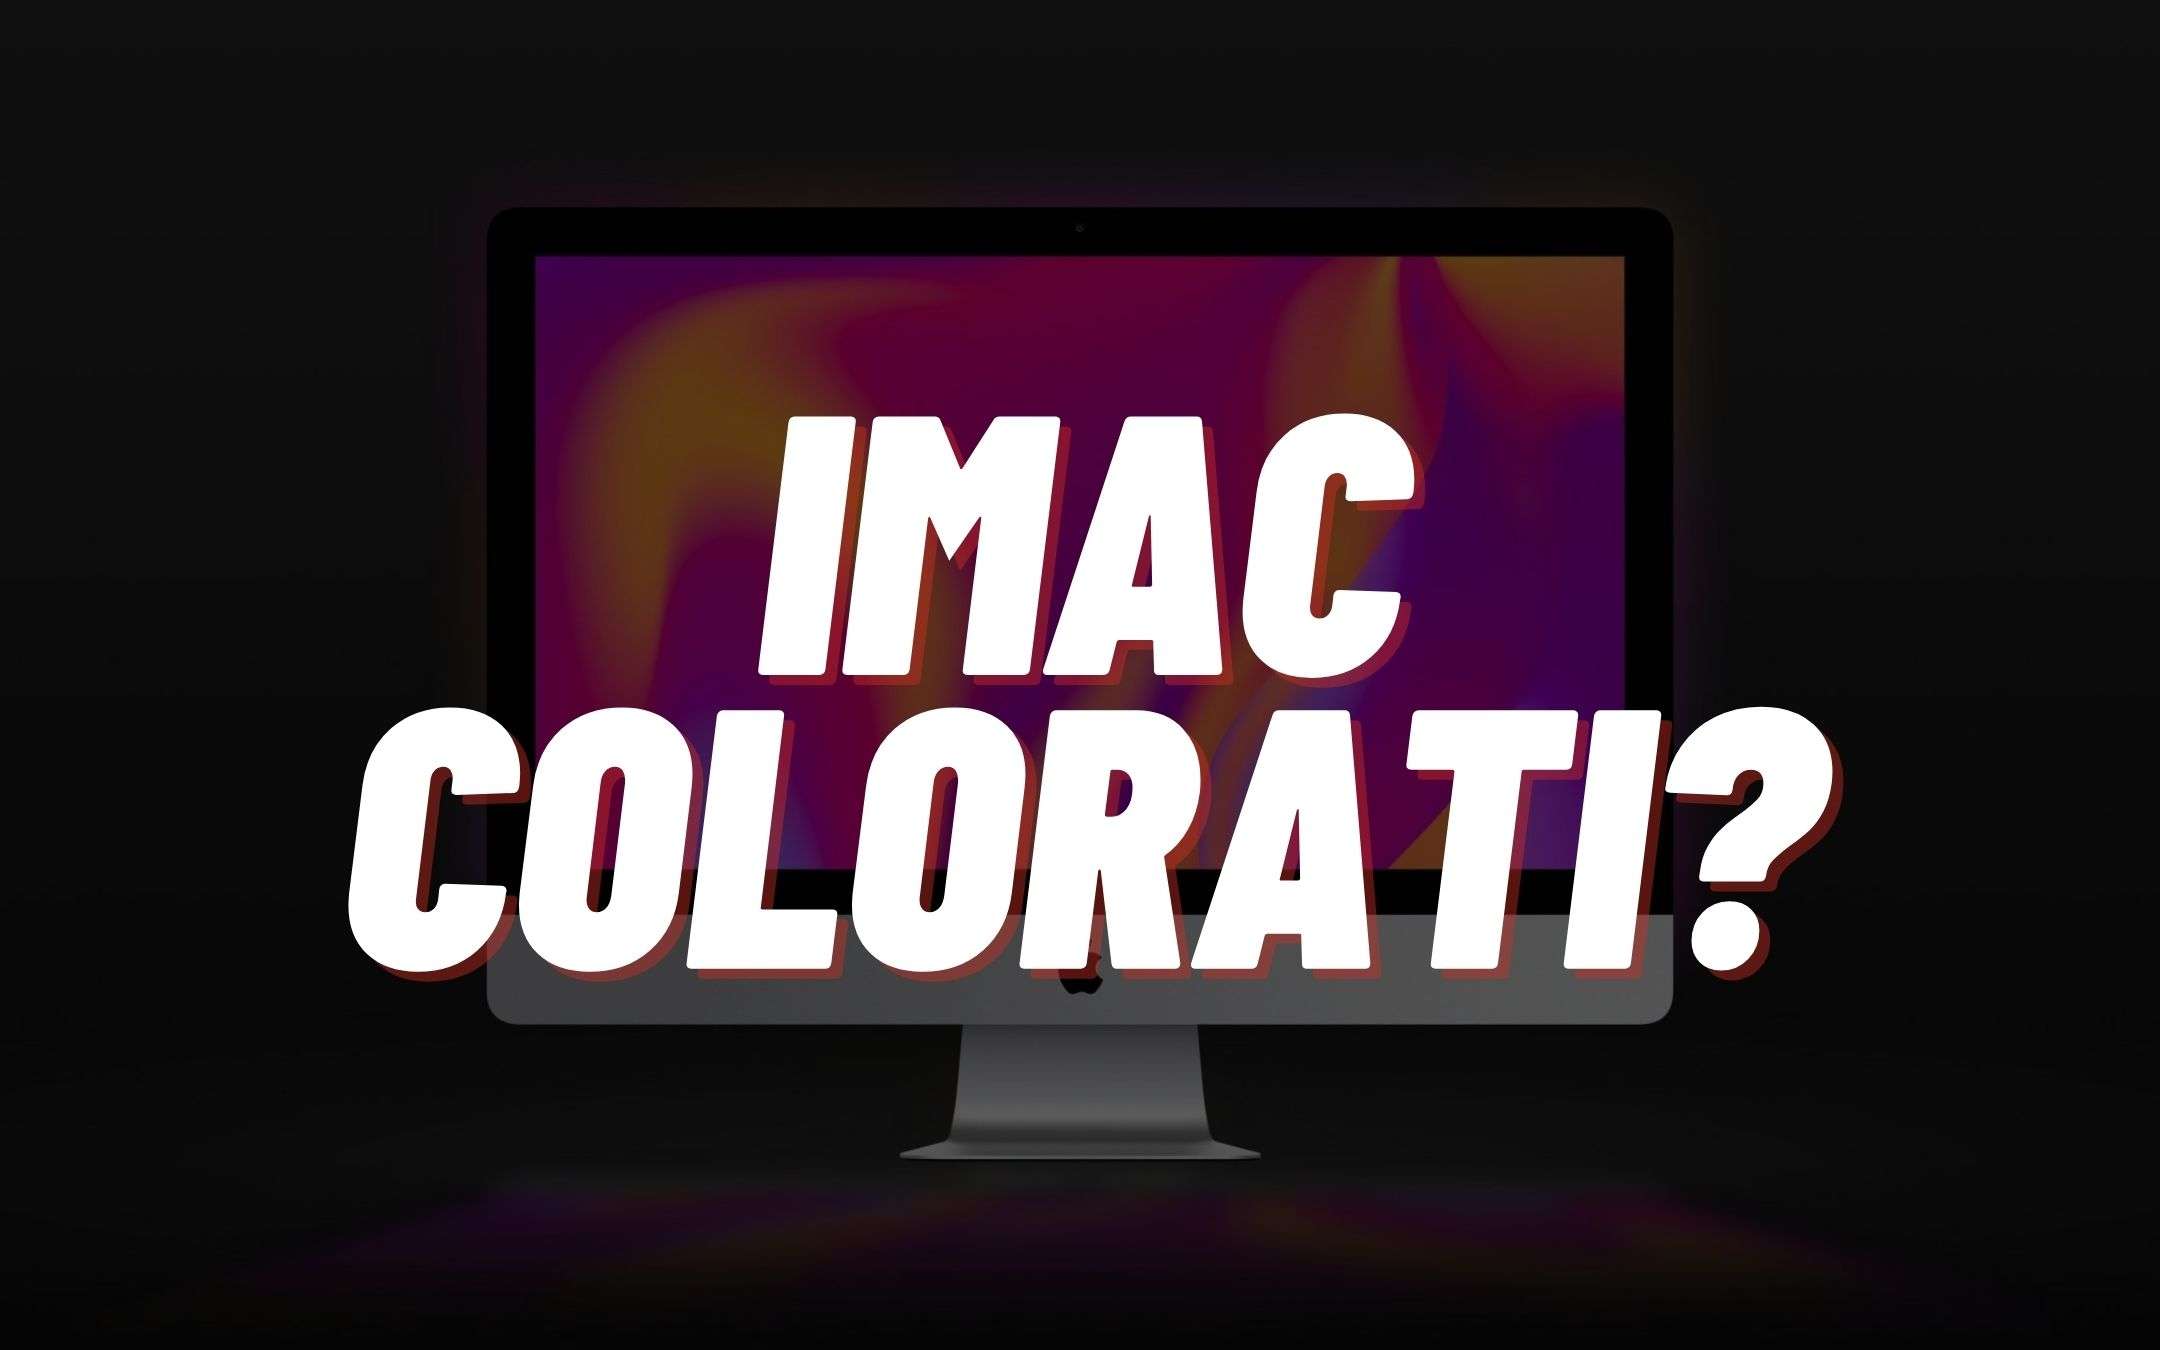 Vedremo i nuovi Apple iMac colorati il 20 aprile?